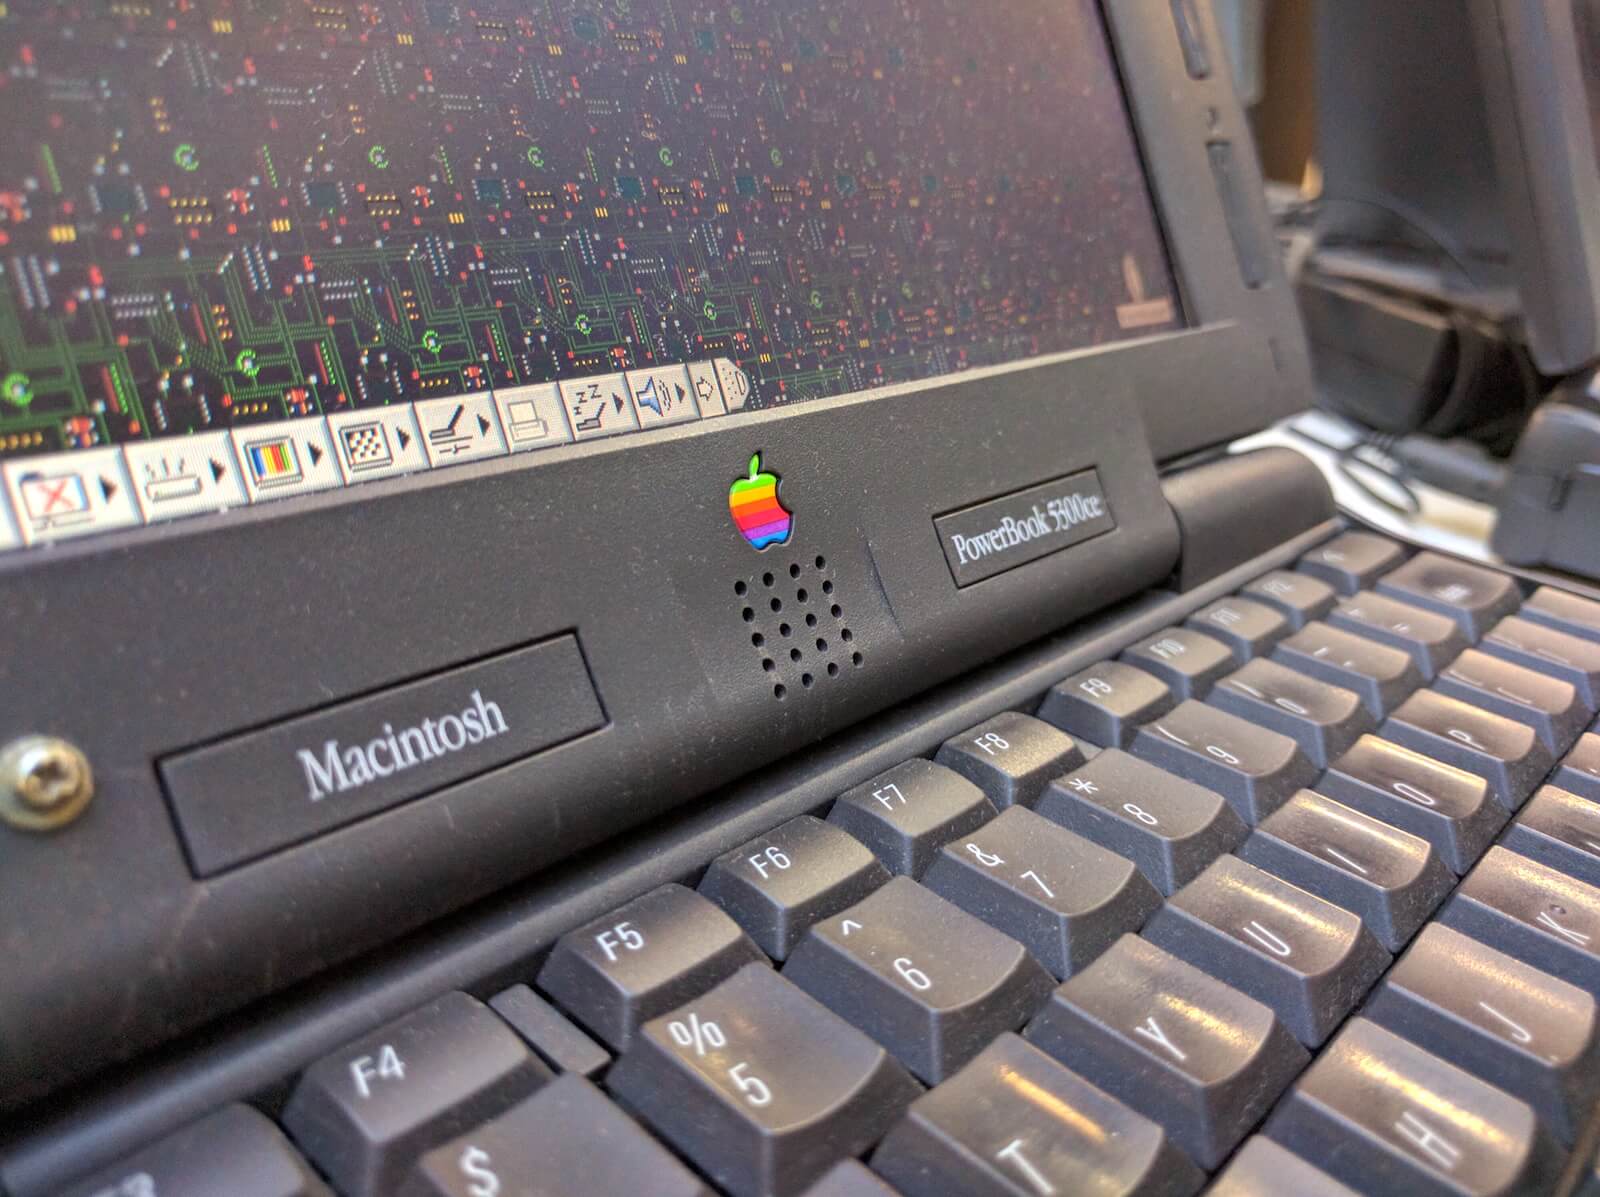 Macintosh PowerBook 5300ce